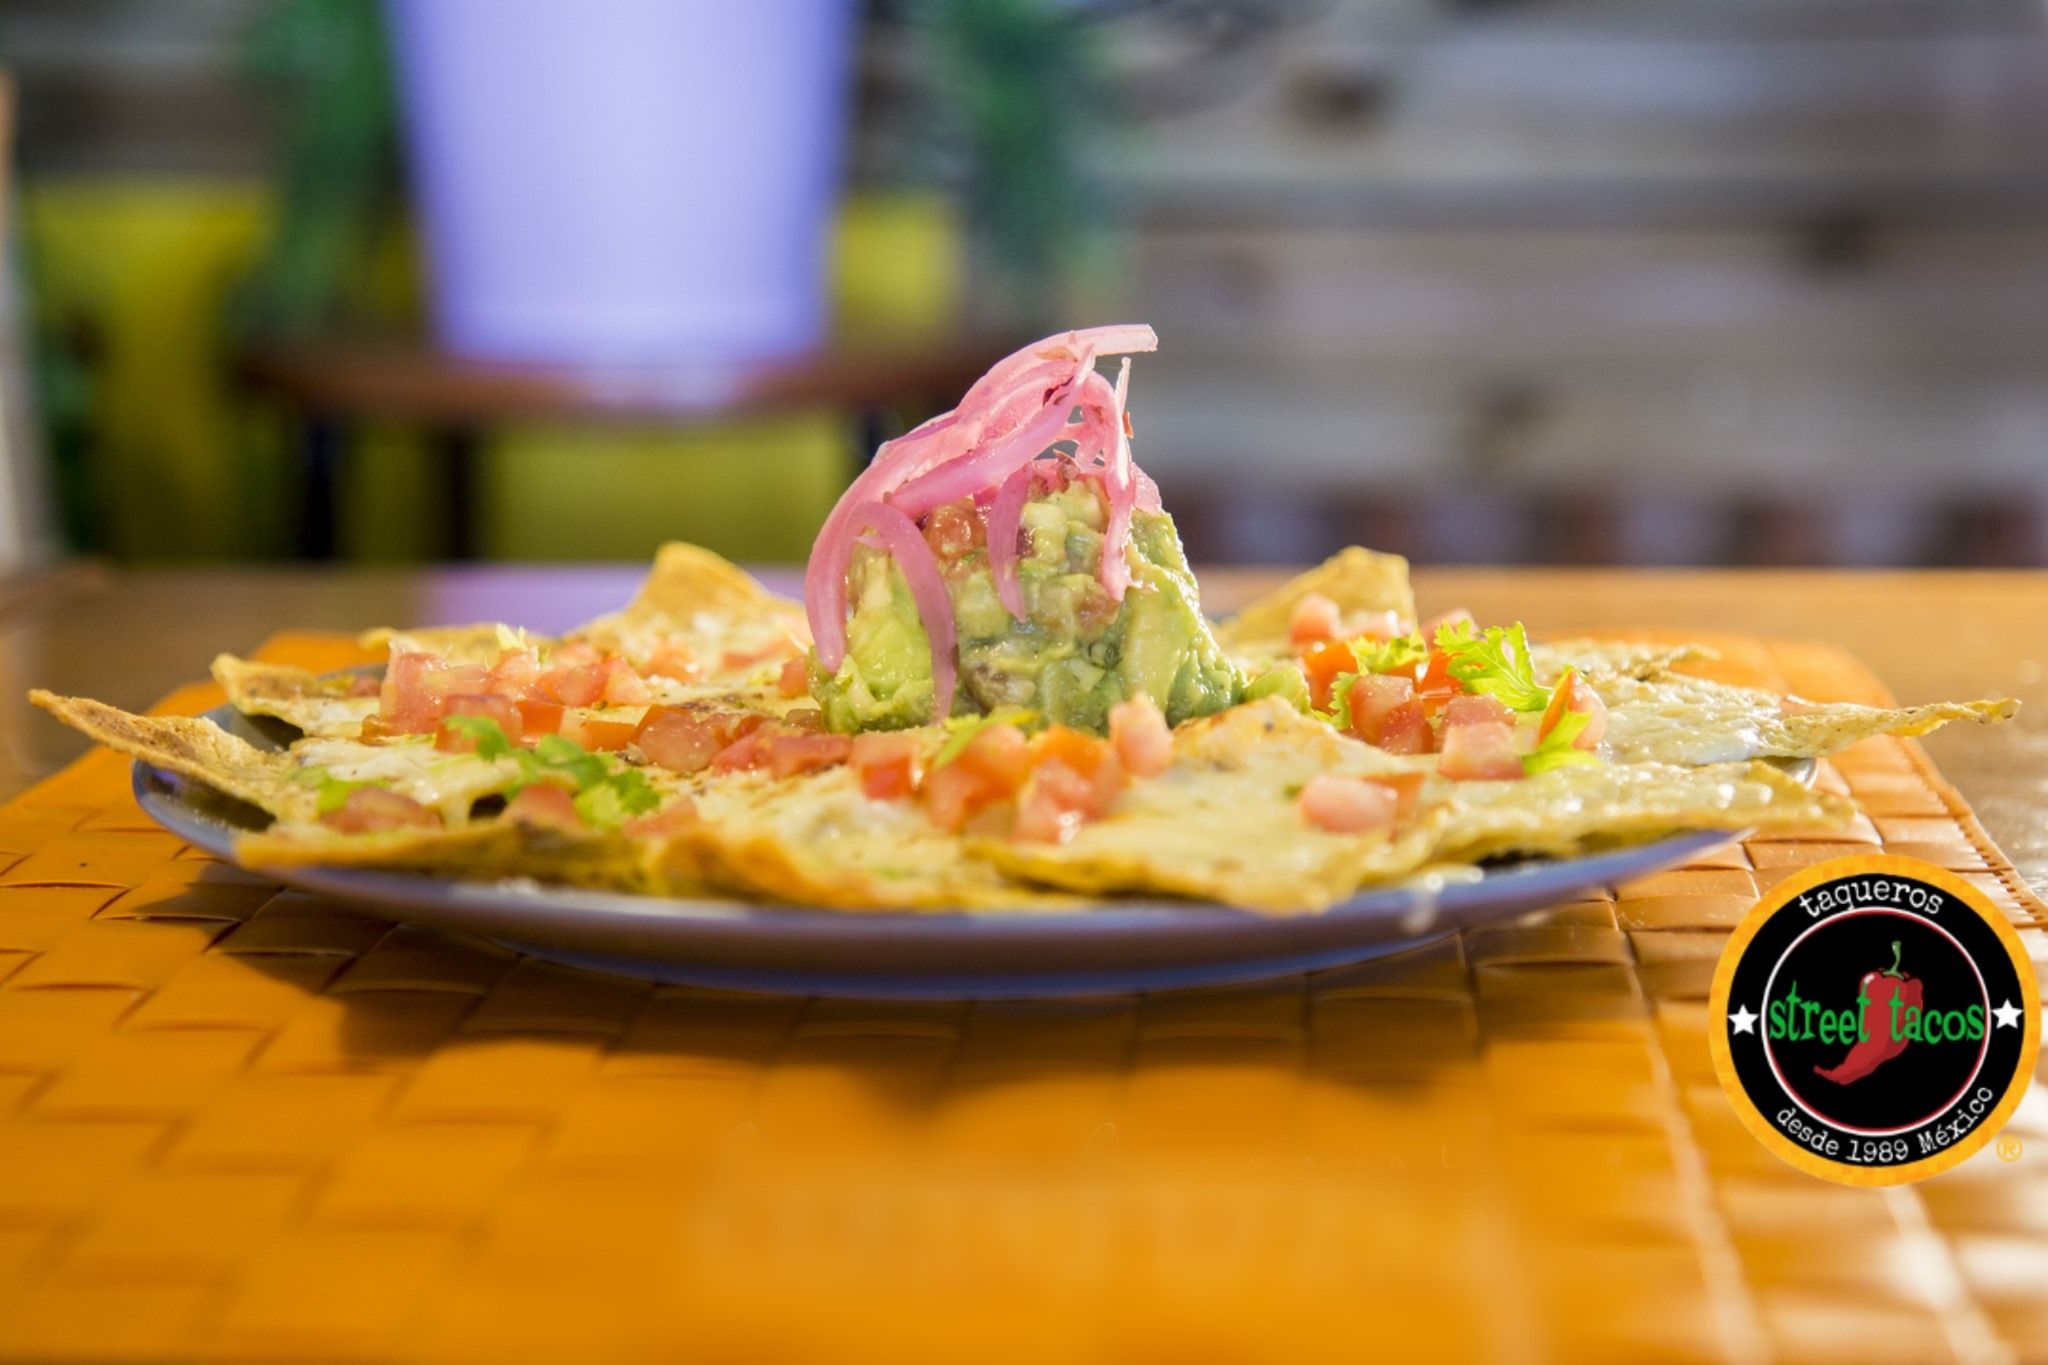 Uno de los platos de Street Tacos, uno de los restaurantes sevillanos que han obtenido el Sello Copil.